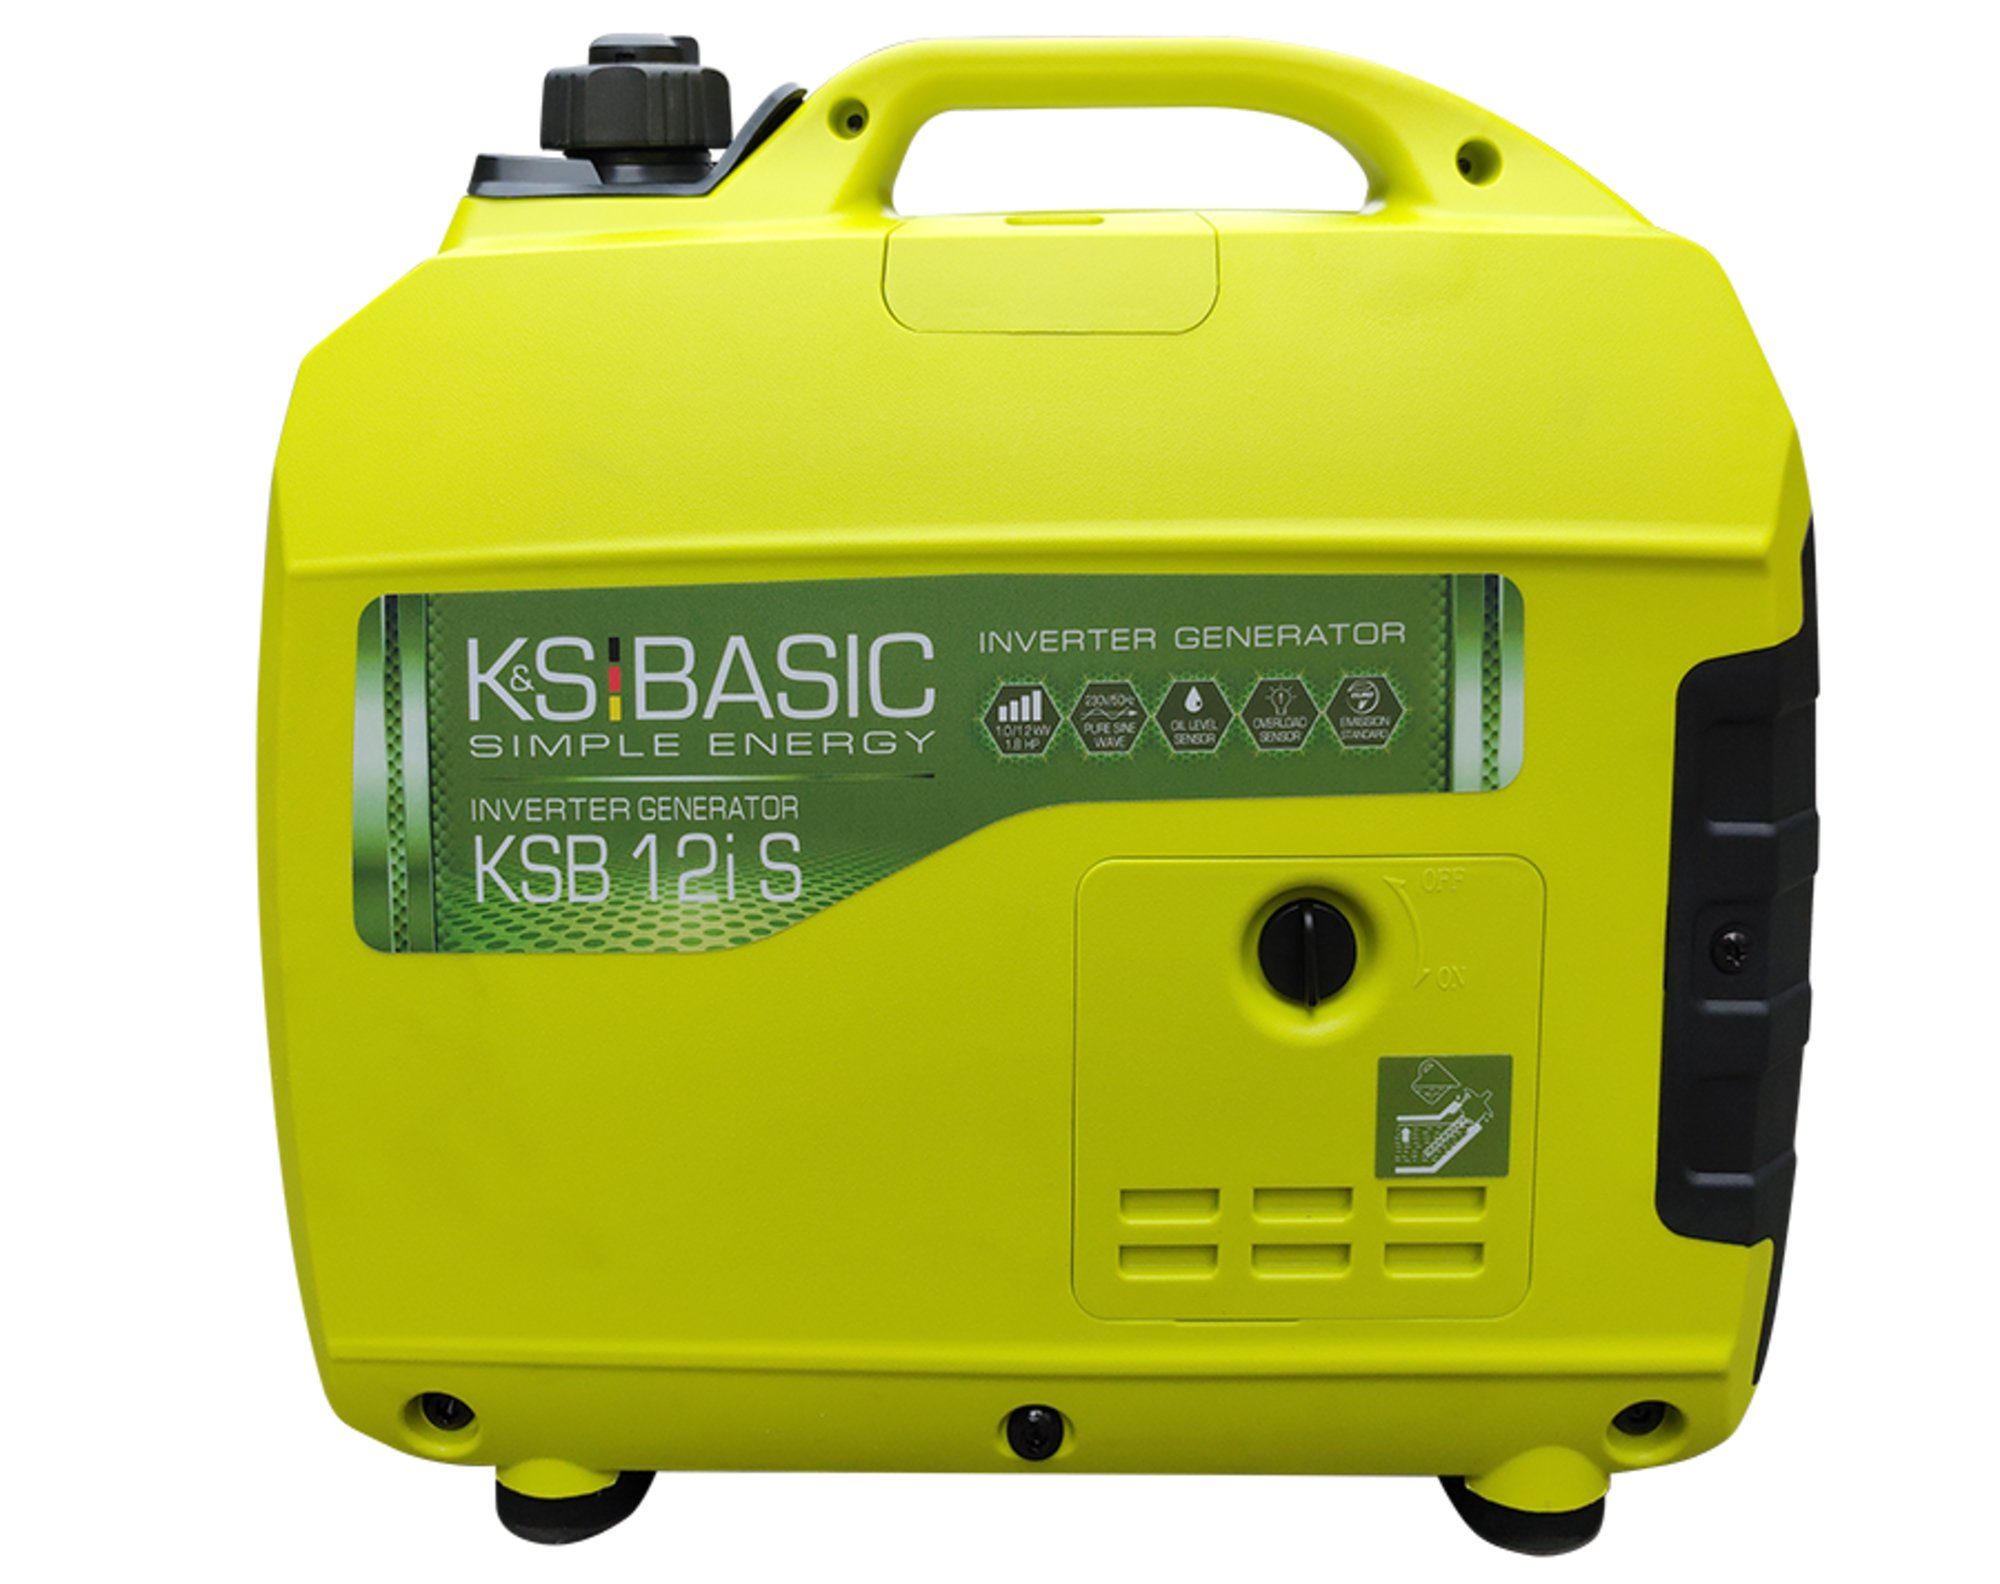 Könner & Söhnen Stromerzeuger KSB 12i S, 1,20 in kW, (geeignet für empfindliche Stromverbraucher, 1-tlg., EURO 5 Motor, 1 x Schuko 230 V, ECO-Modus), schallgedämmtes Gehäuse, kompakte Bauart. IP23M